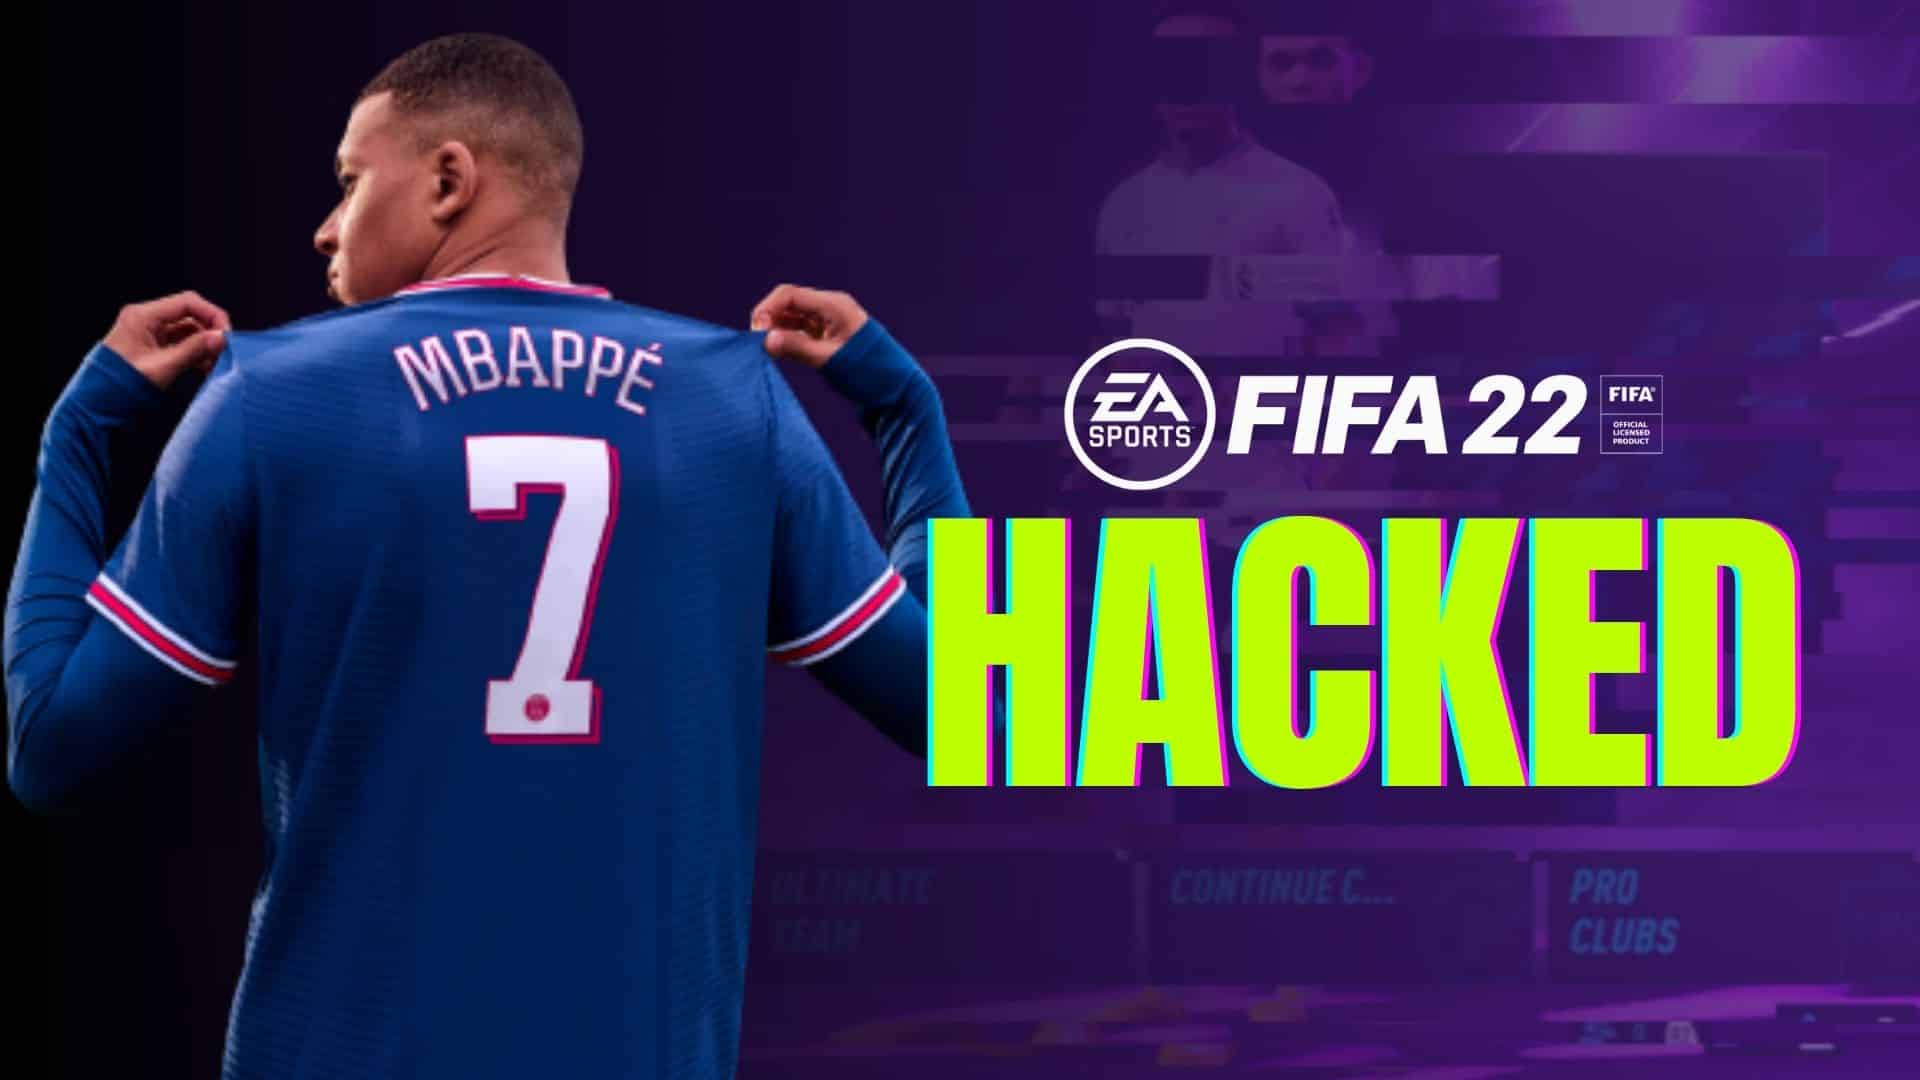 Fifa 22 hacked